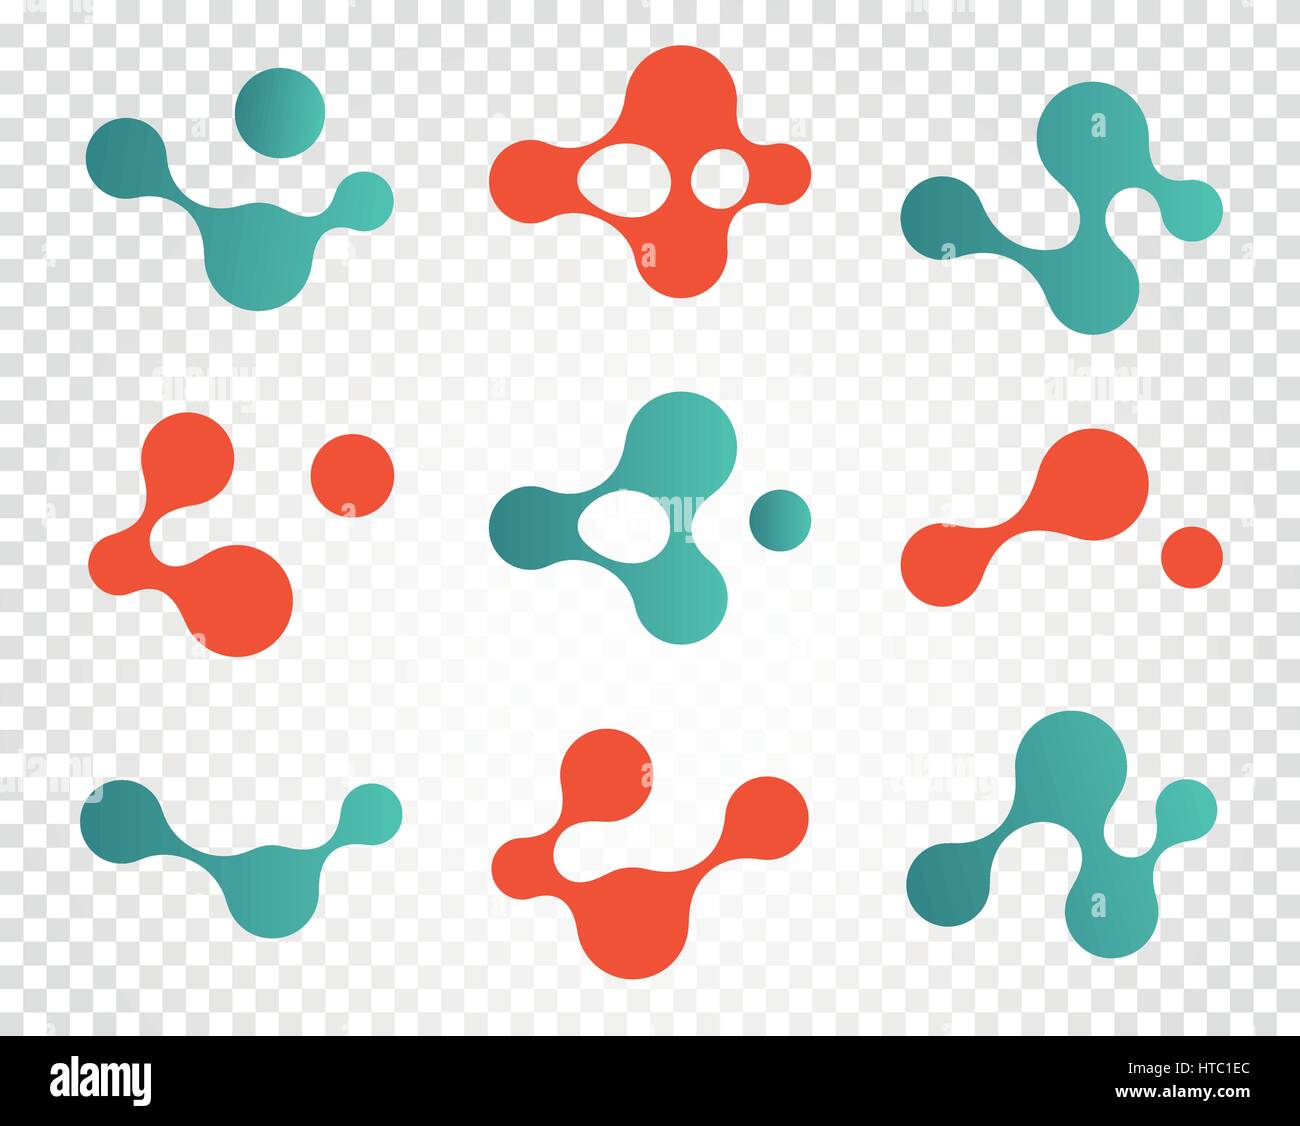 Resumen aislada de color rojo y azul, logotipo Logotipo moléculas de colección, elementos químicos sobre fondo blanco ilustración vectorial Ilustración del Vector